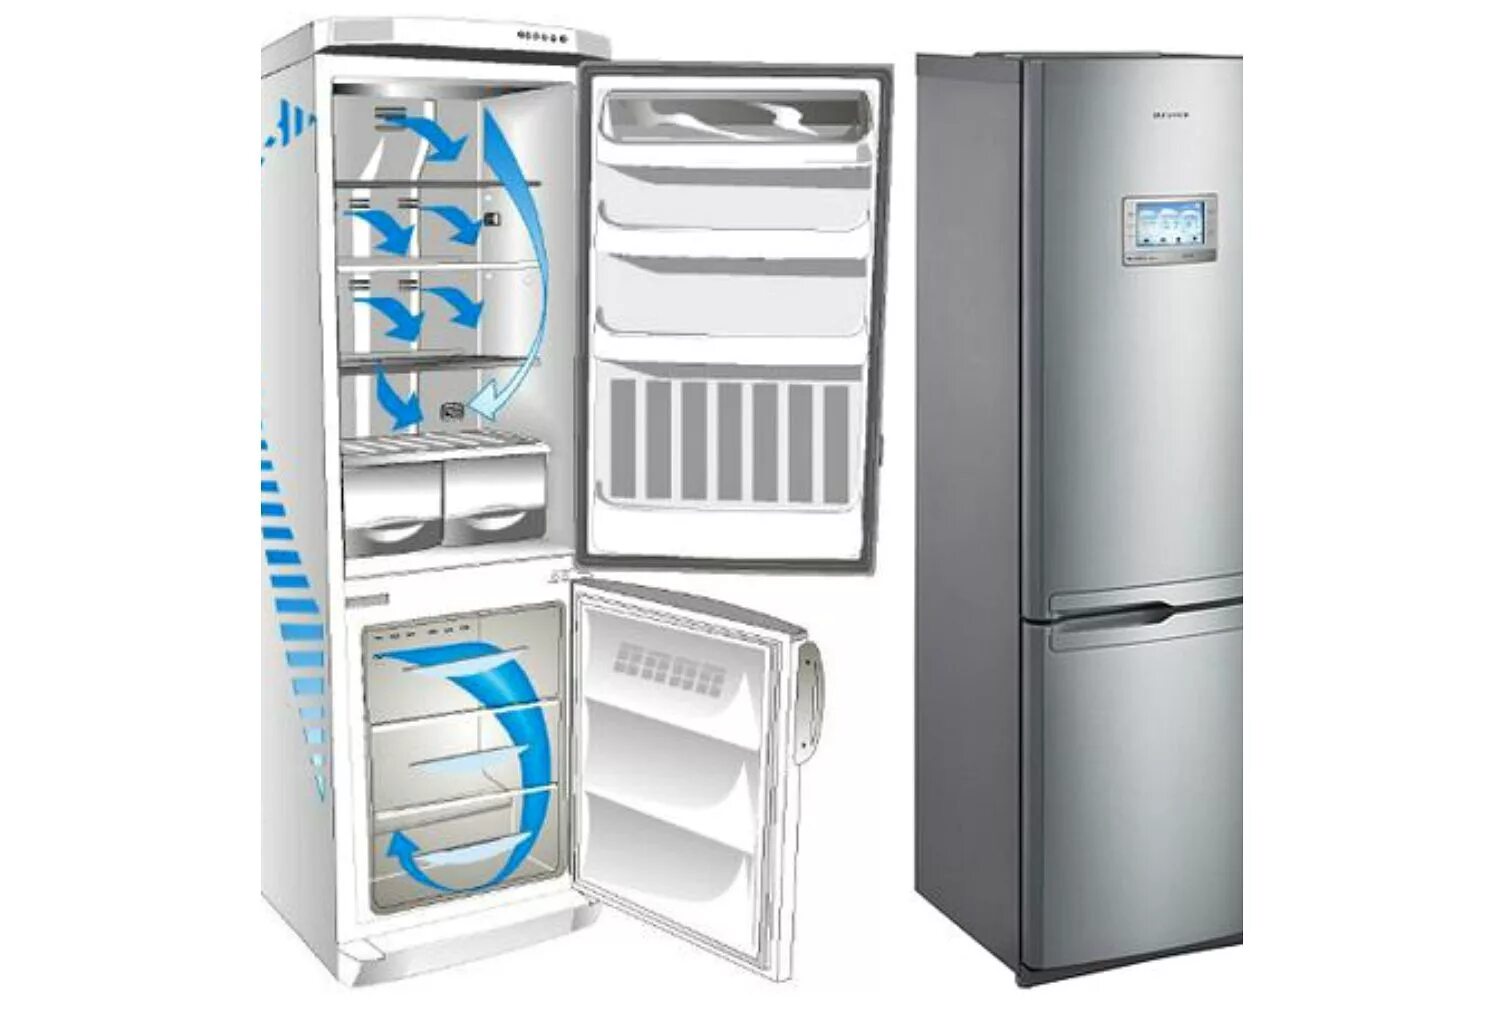 Атлант ноу Фрост. Холодильник eigen Stark-rf32. LG холодильник двухкамерный no Frost. Система ноу Фрост в холодильнике. Холодильник без no frost